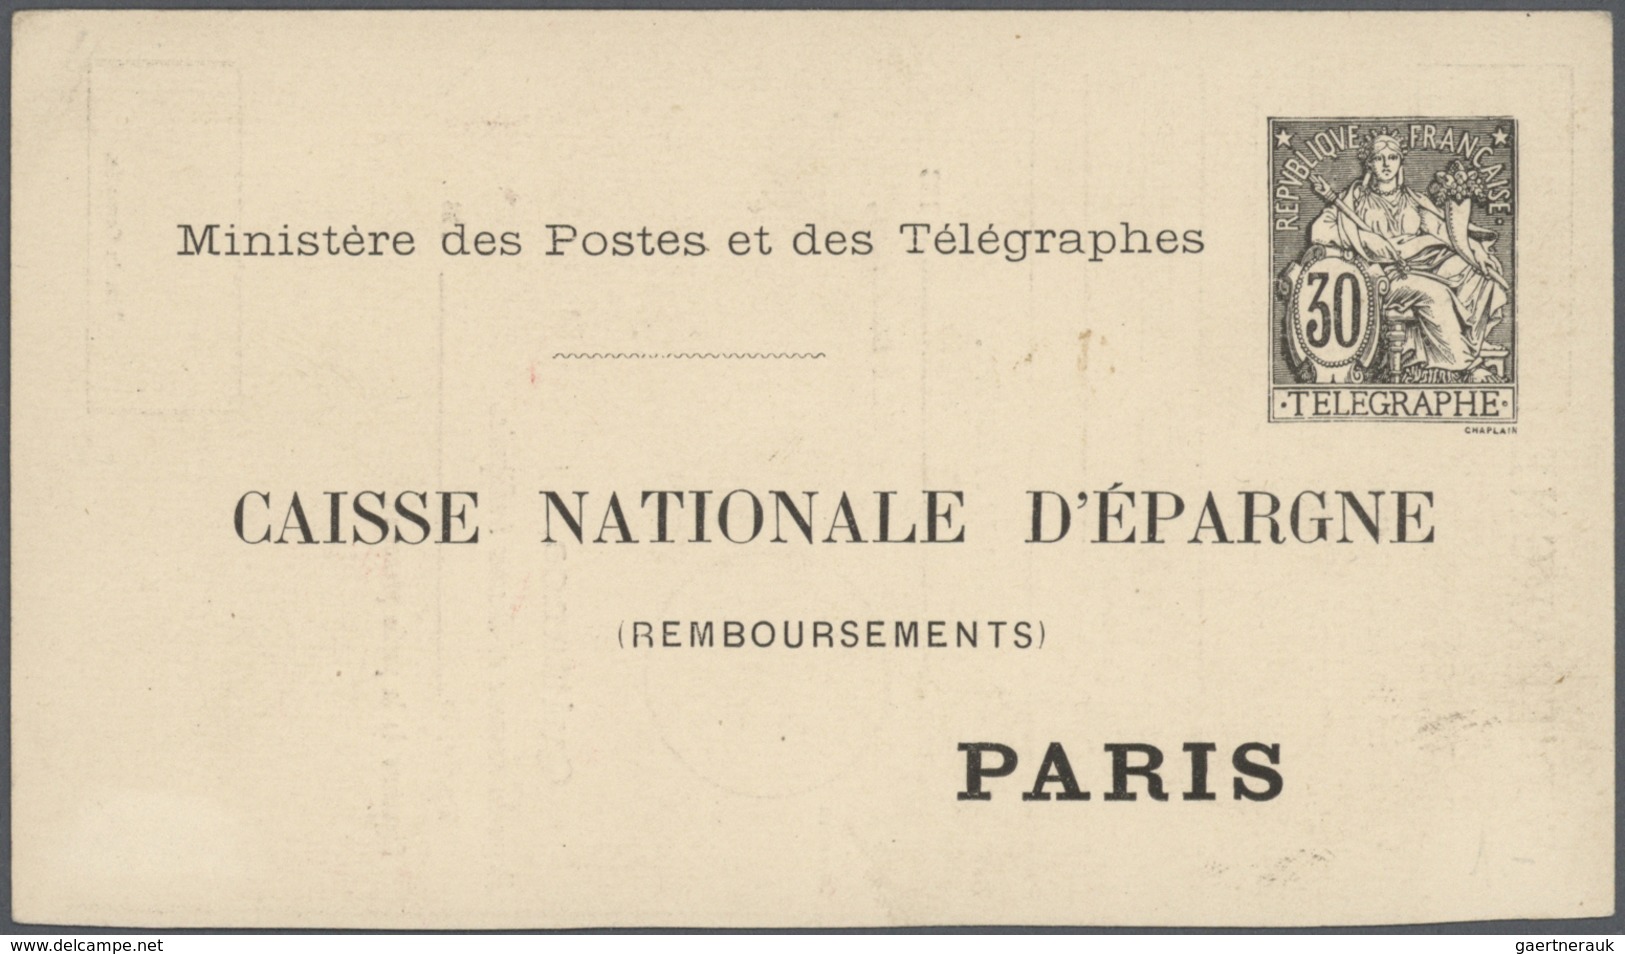 26520 Frankreich - Ganzsachen: 1875/1910 (ca.), Sammlung von etwa 140 alten Ganzsachen bzw. Postkarten-Vor